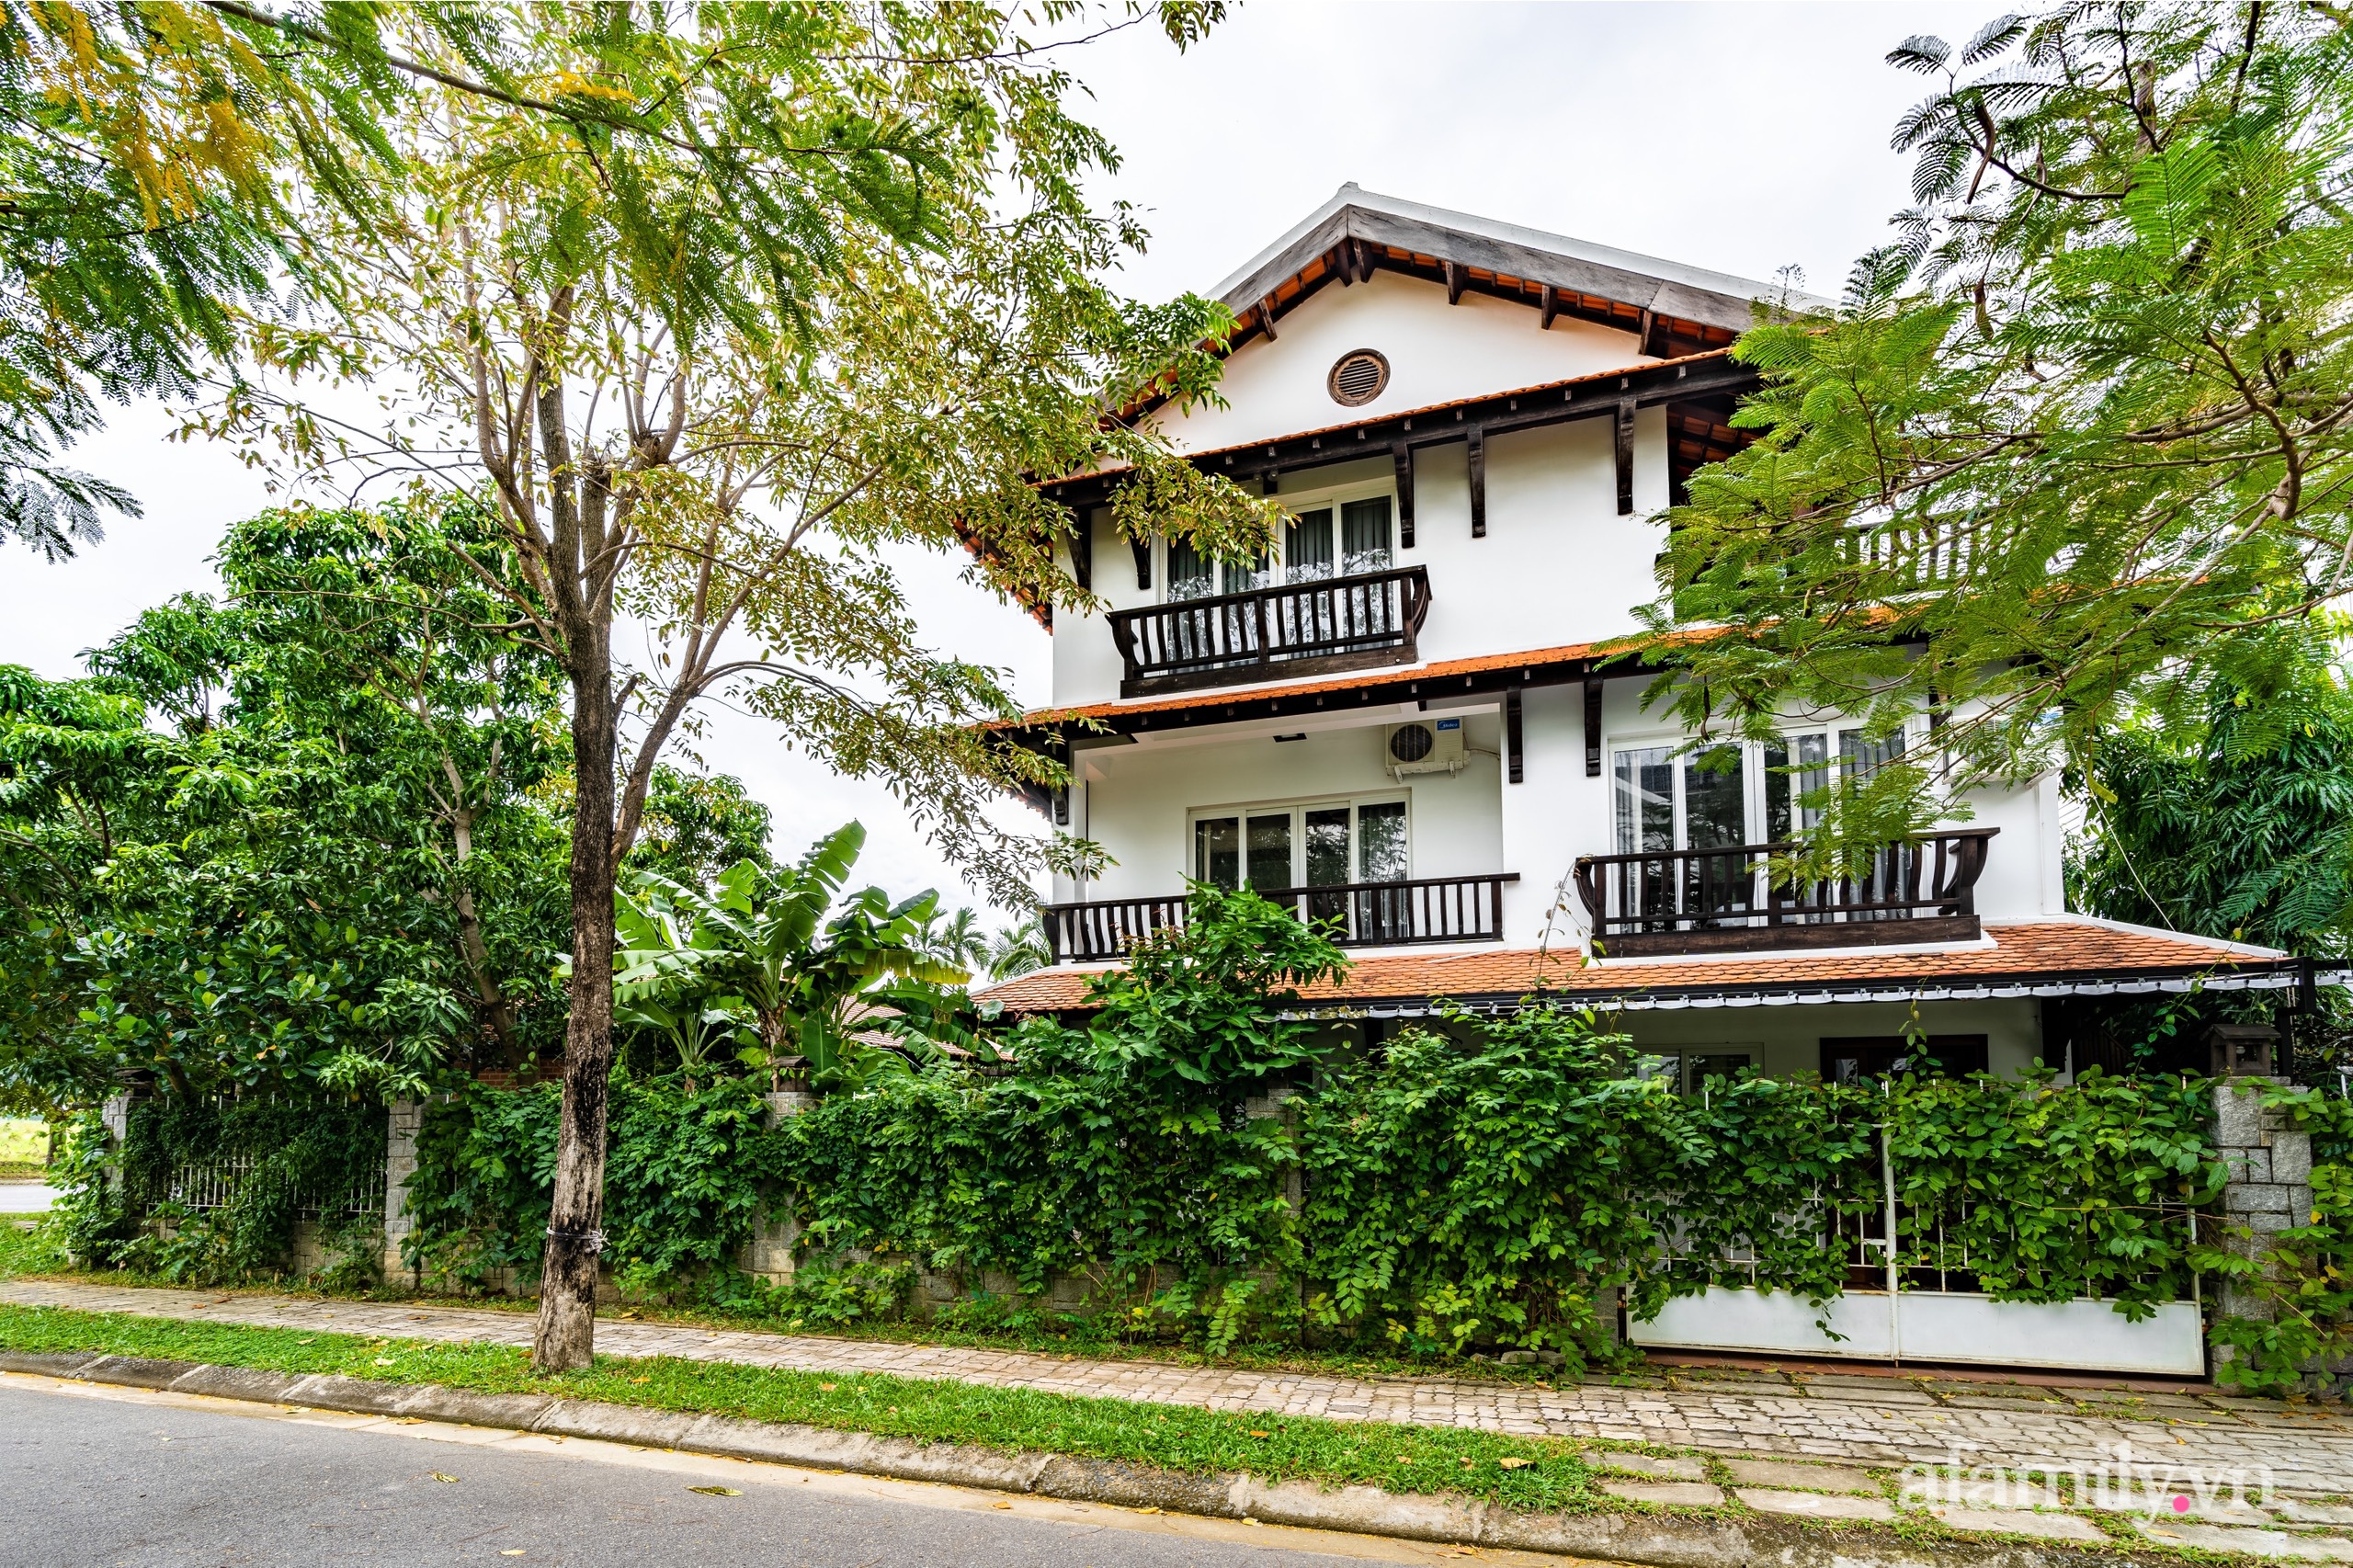 Căn nhà vườn xây 10 năm vẫn đẹp hút mắt với nội thất gỗ và cây xanh quanh nhà ở Nha Trang - Ảnh 3.